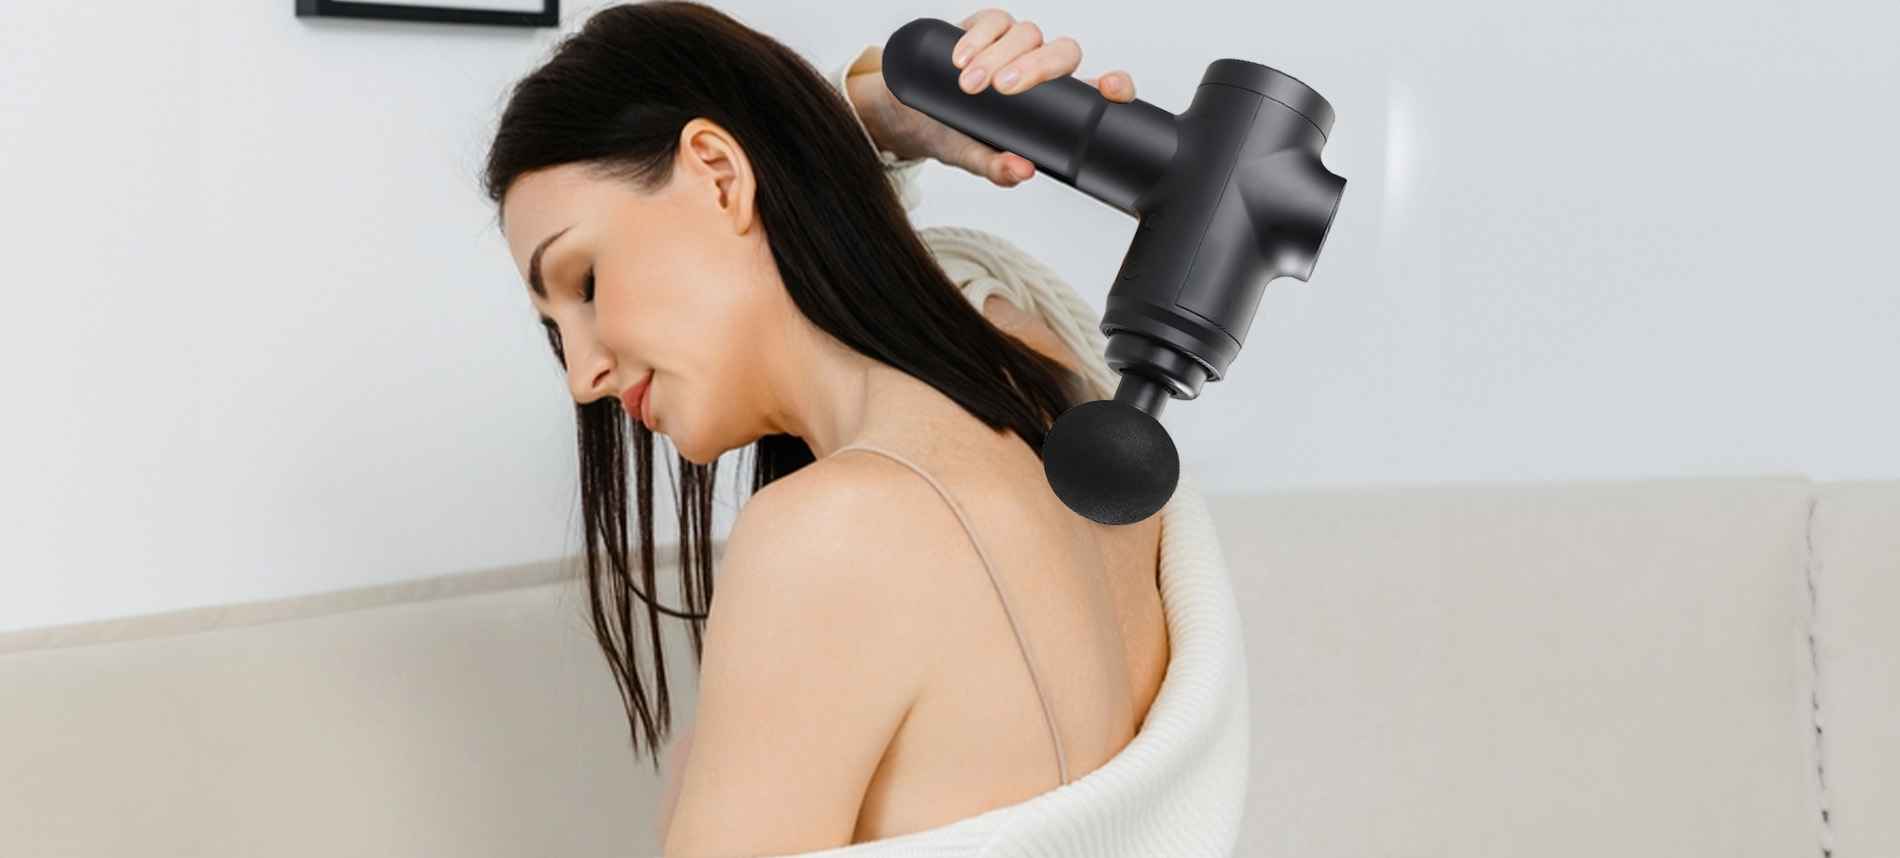 Full Body Massager Machine Price Guide 2023 – Agaro